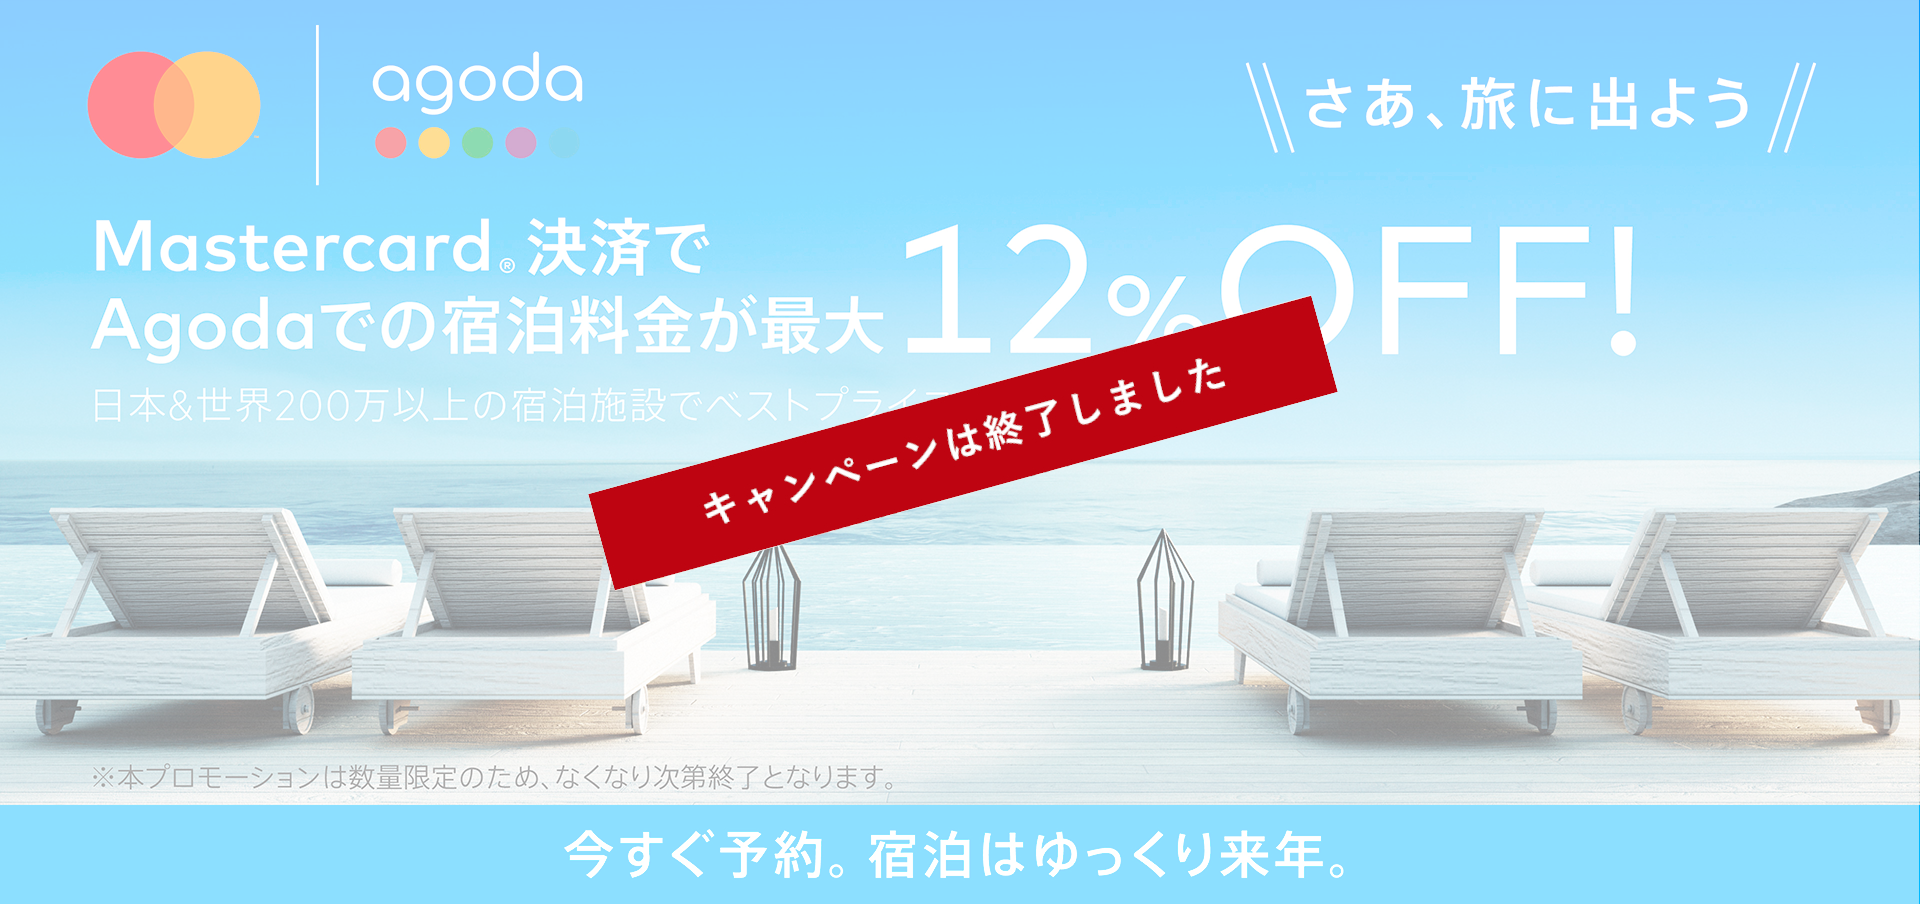 Mastercard決済でAgodaでの宿泊料金が最大12%OFF！日本＆世界200万以上の宿泊施設でベストプライスを。今すぐ予約。宿泊はゆっくり来年。※本プロモーションは数量限定のため、なくなり次第終了となります。